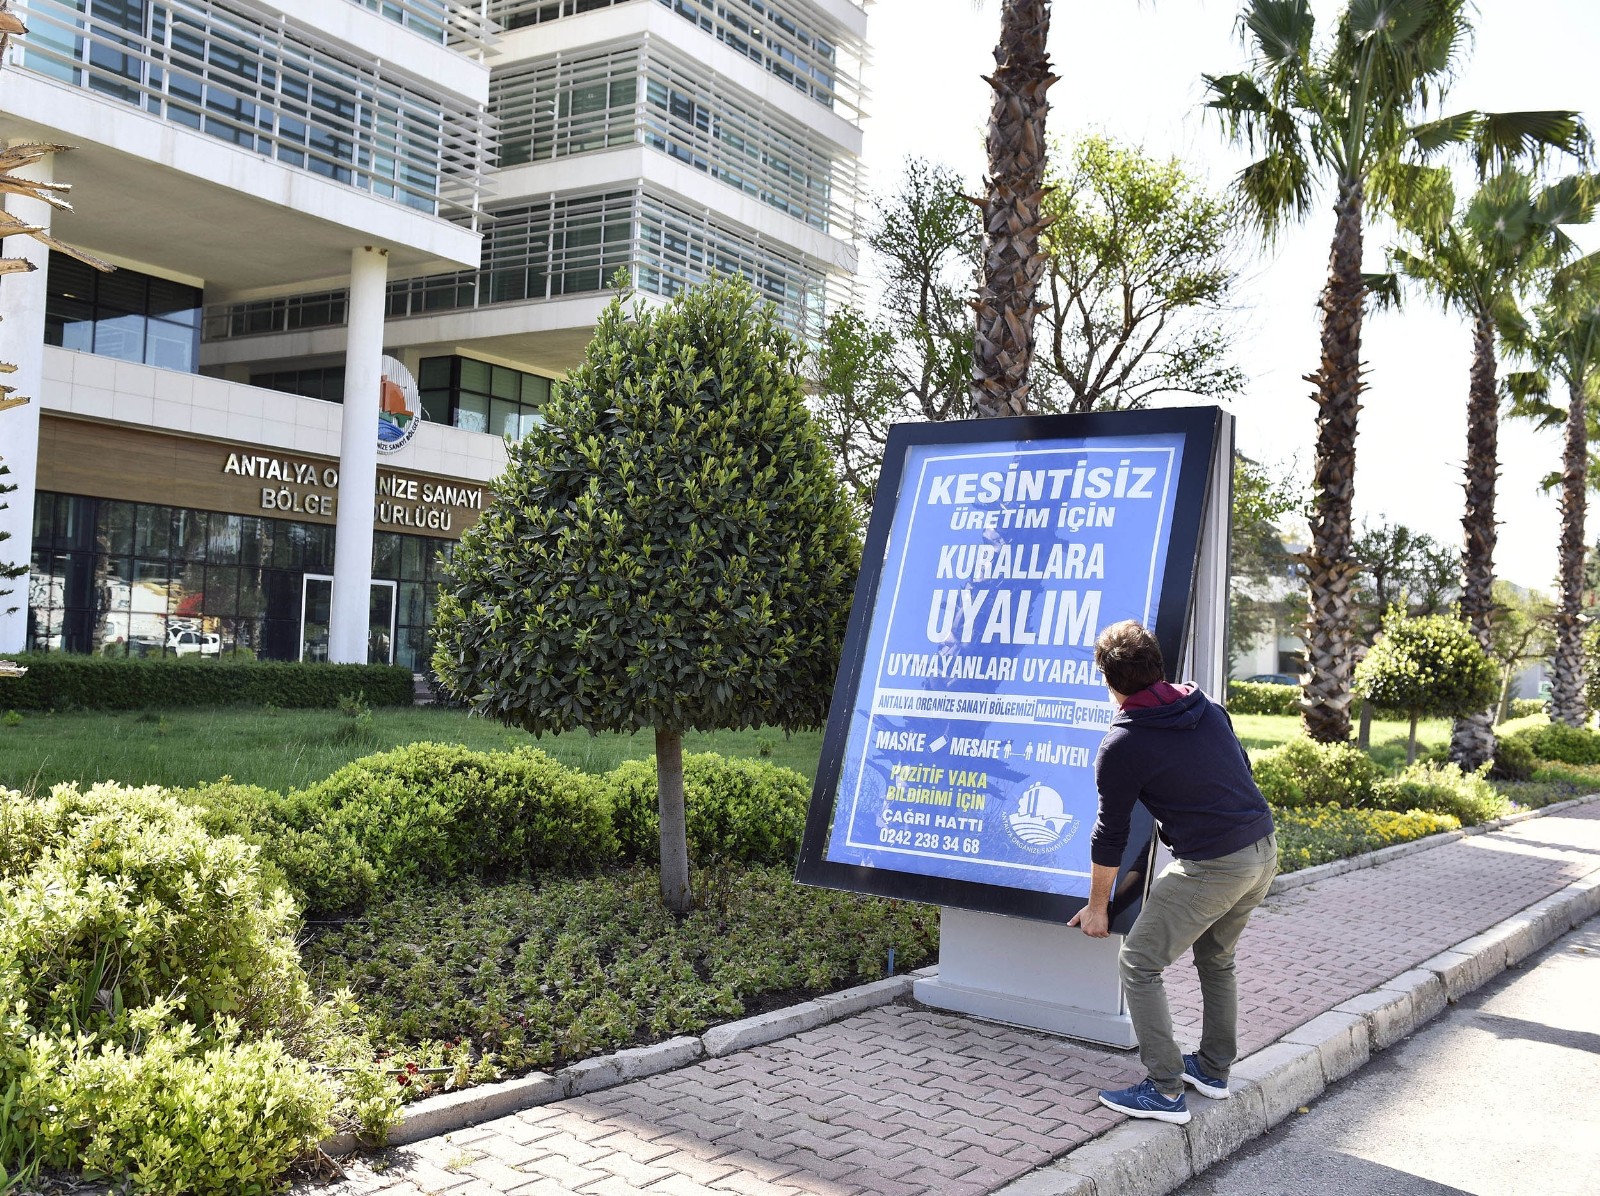  ‘Mavi OSB, Mavi Antalya’ hareketi başlatıldı